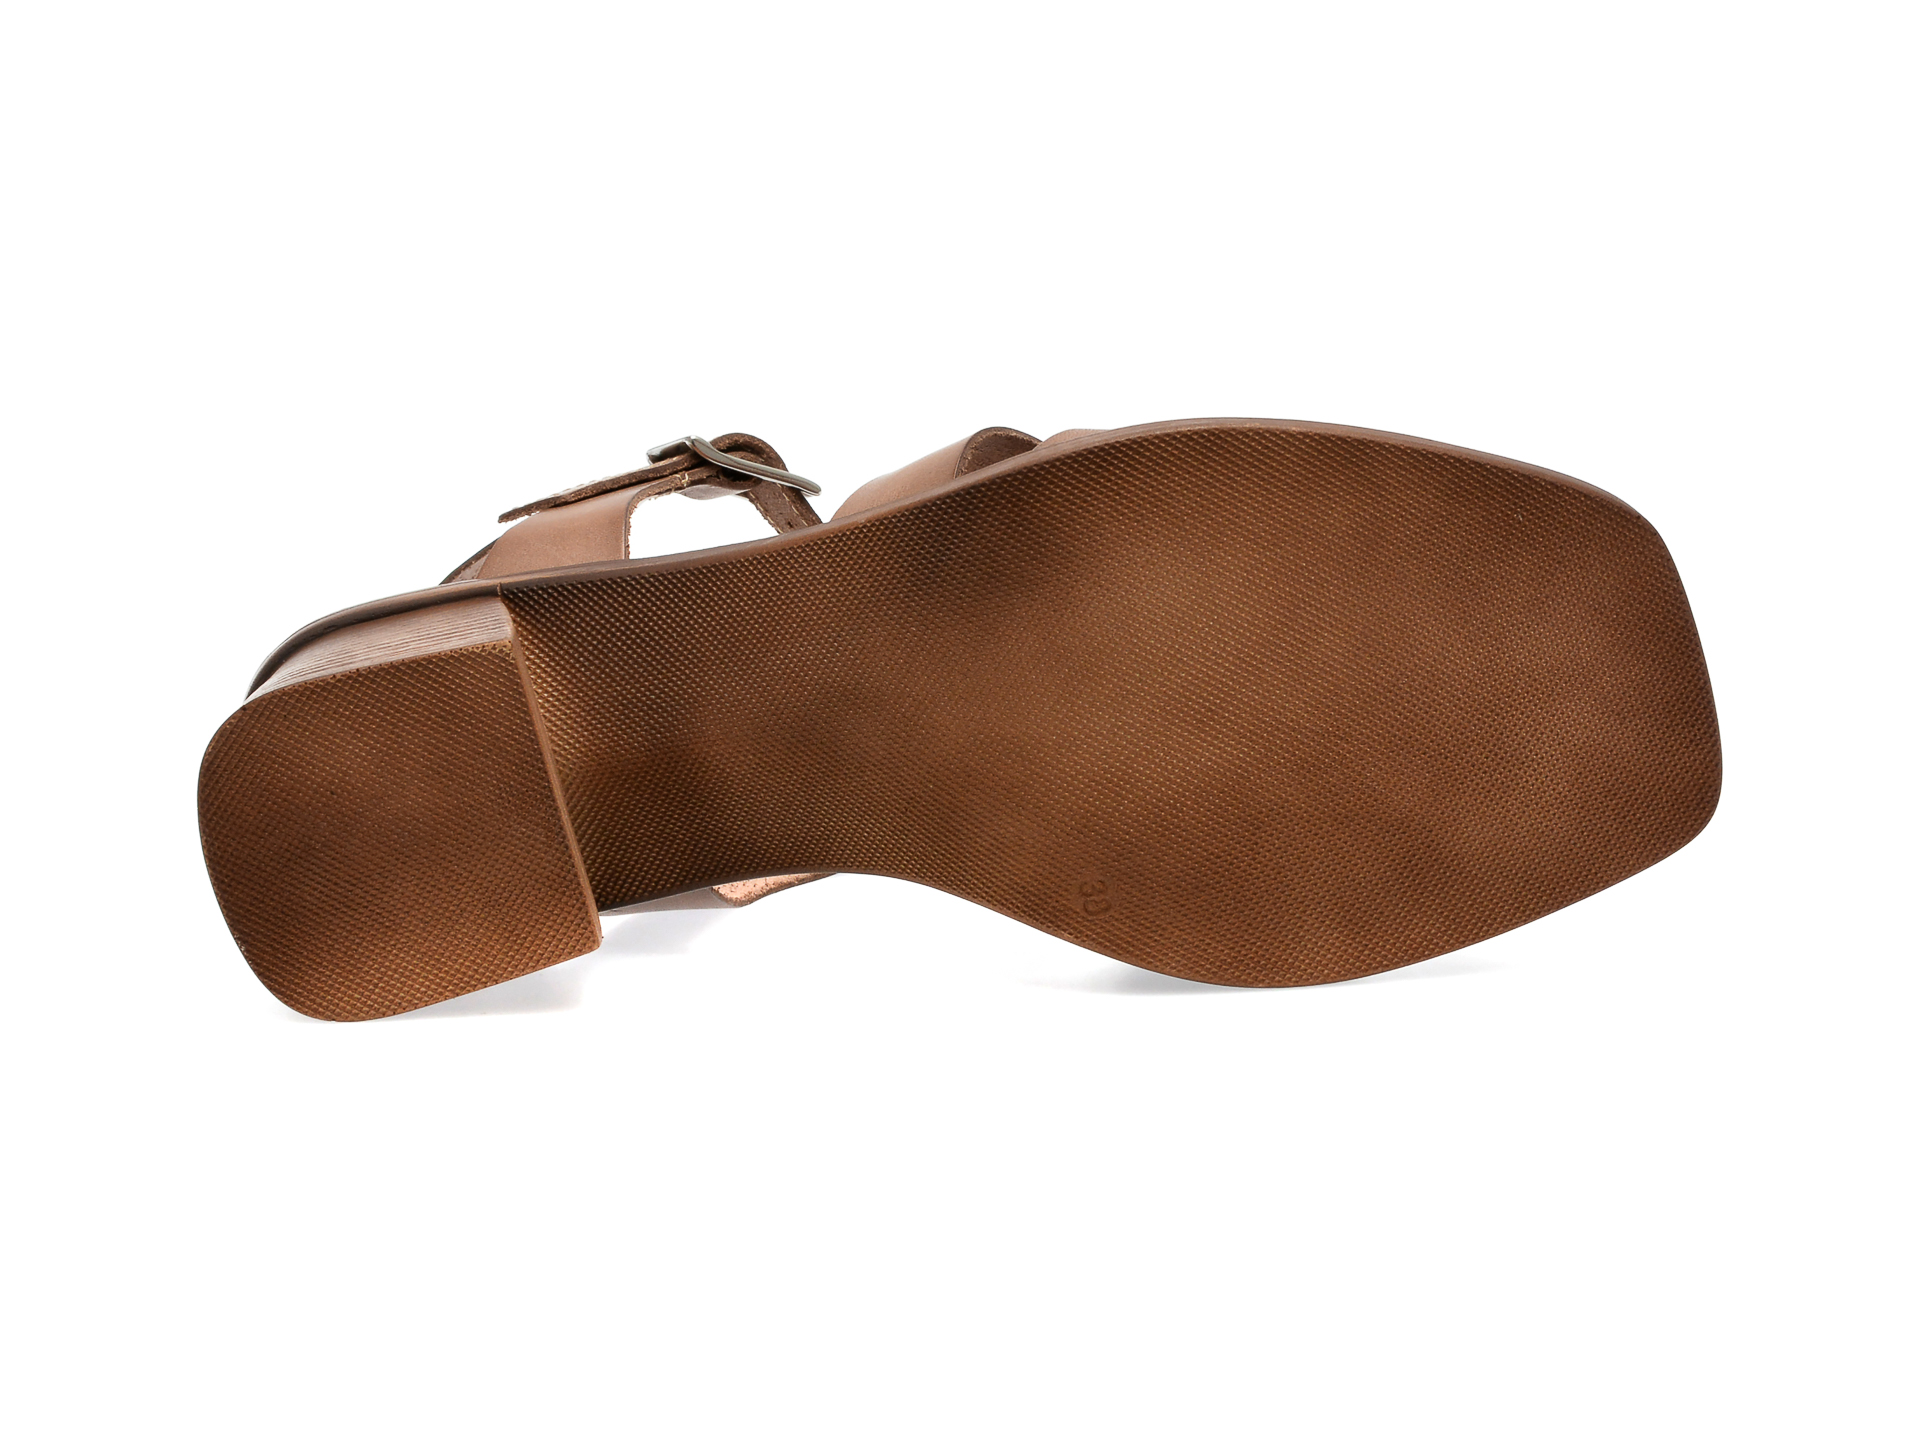 Poze Sandale IMAGE maro, ENRIQUE, din piele naturala